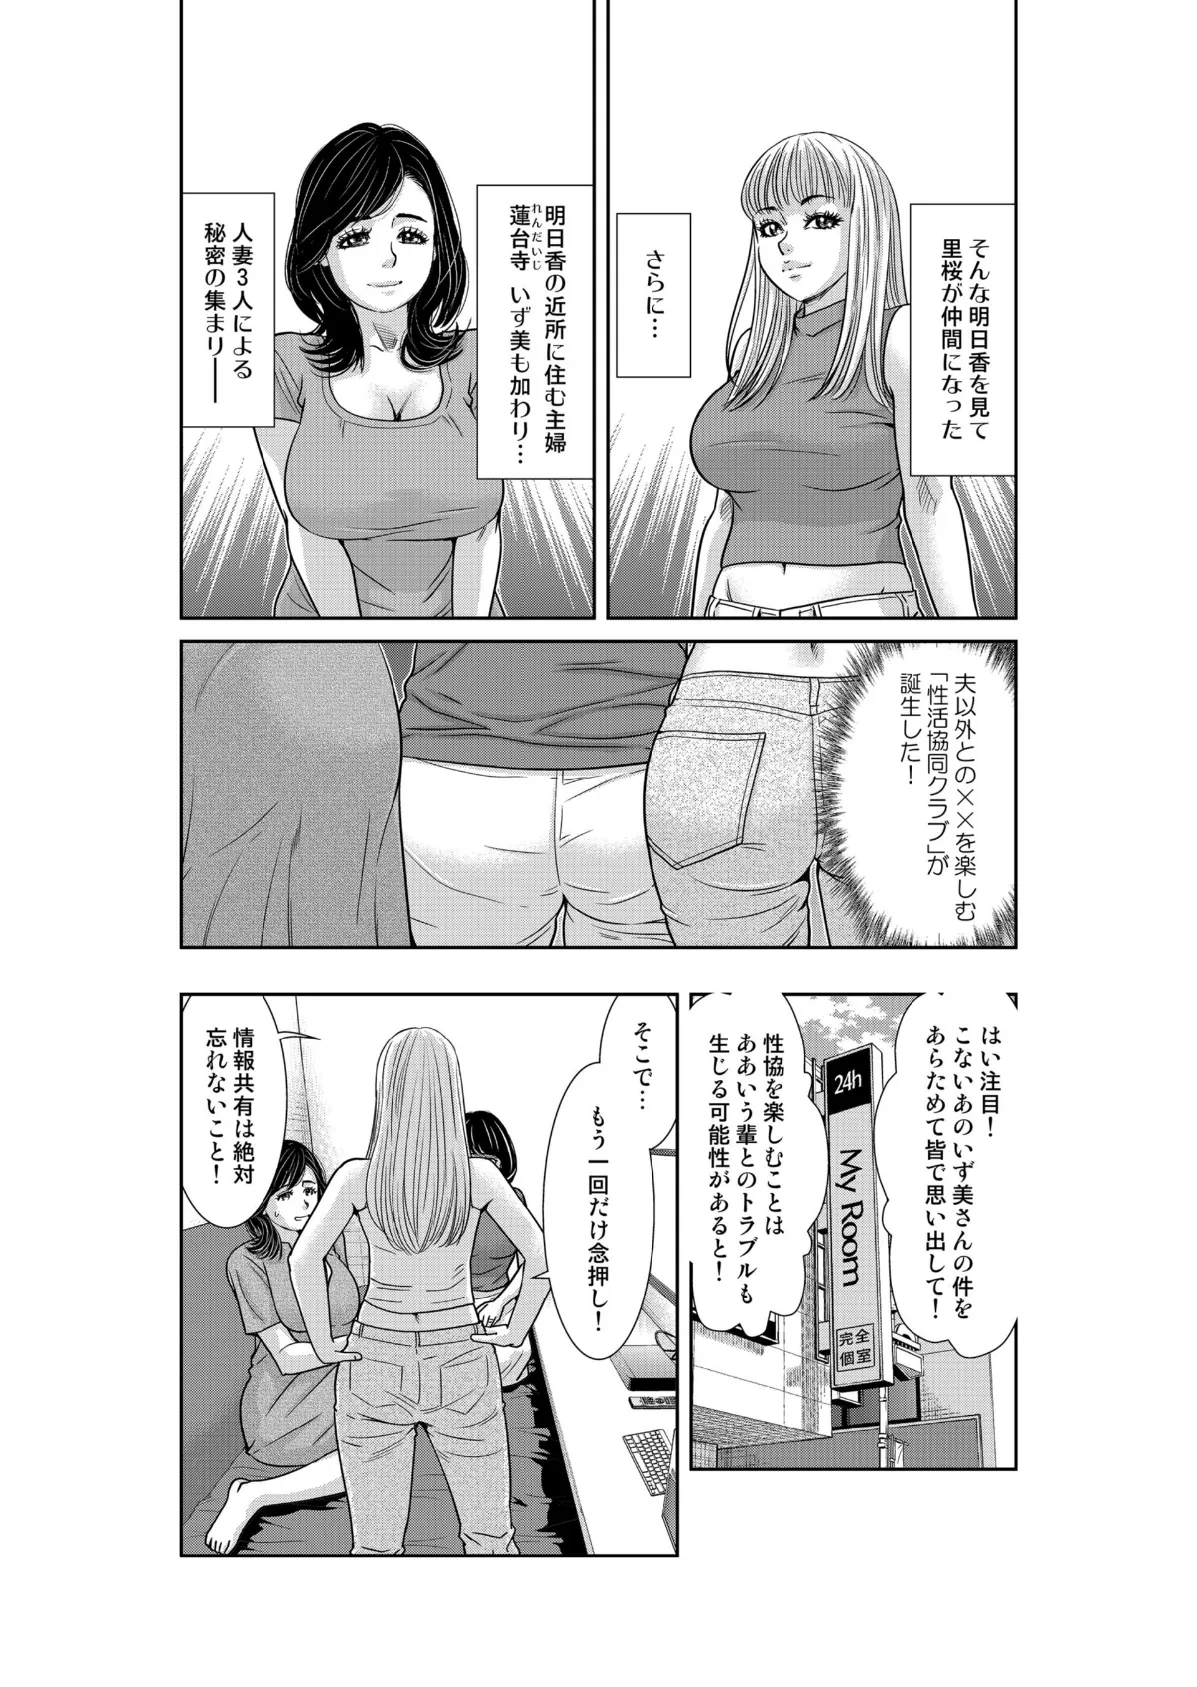 性活協同クラブー人妻たちの貪欲××漁りサークルー 8 4ページ